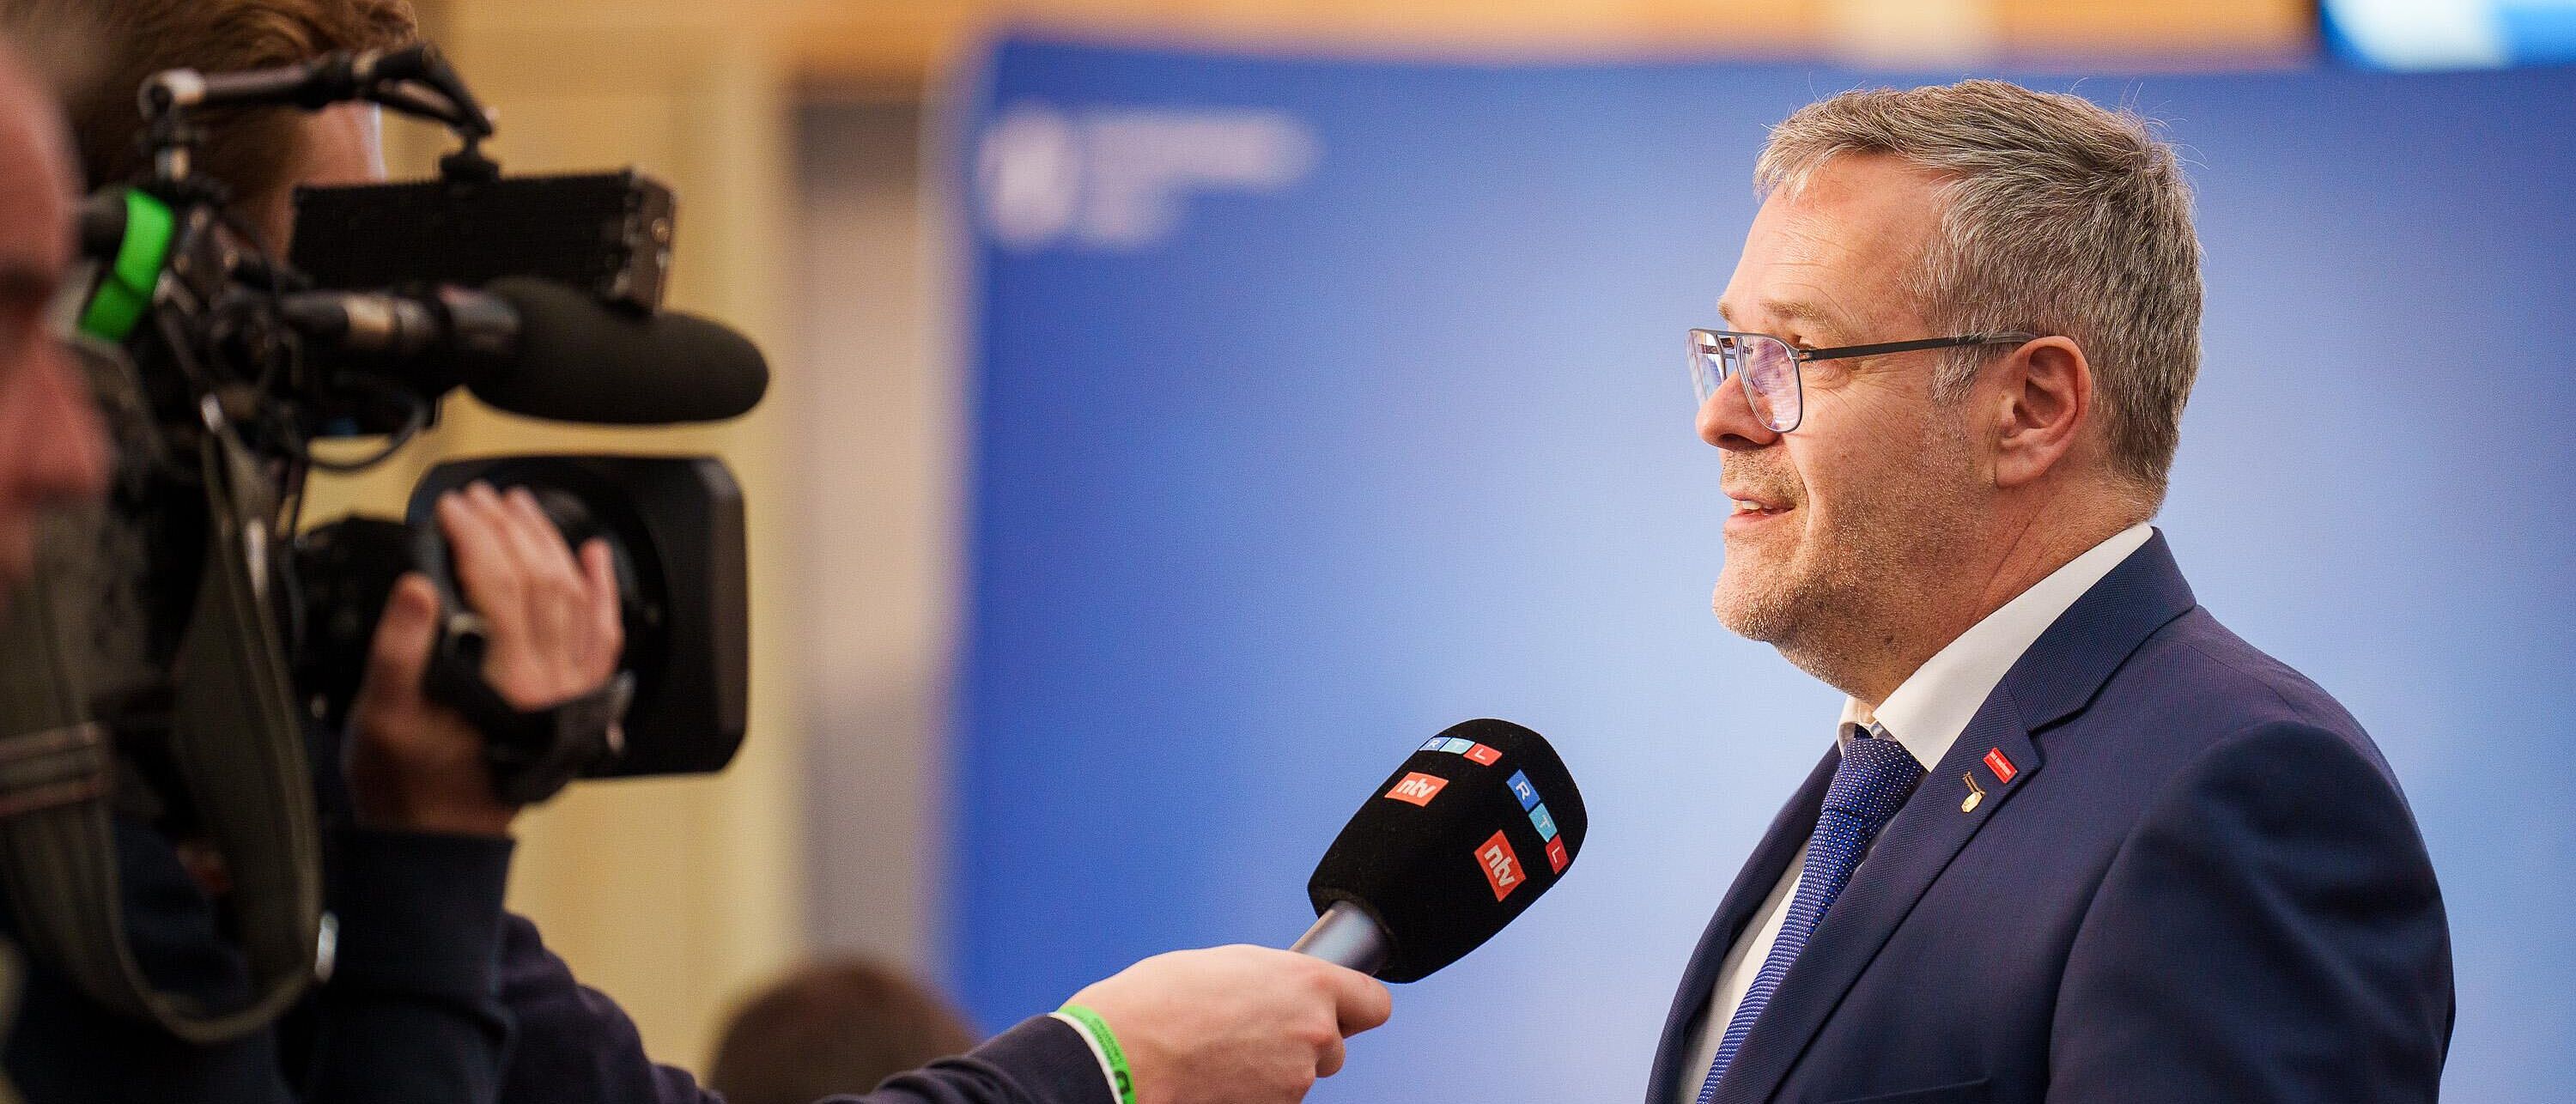 Handwerkskammerpräsident Jörg Dittrich steht rechts im Bild, ihm gegenüber ein Kamerateam von RTL denen er Fragen in ein bereitgehaltenes Mikrofon beantwortet.